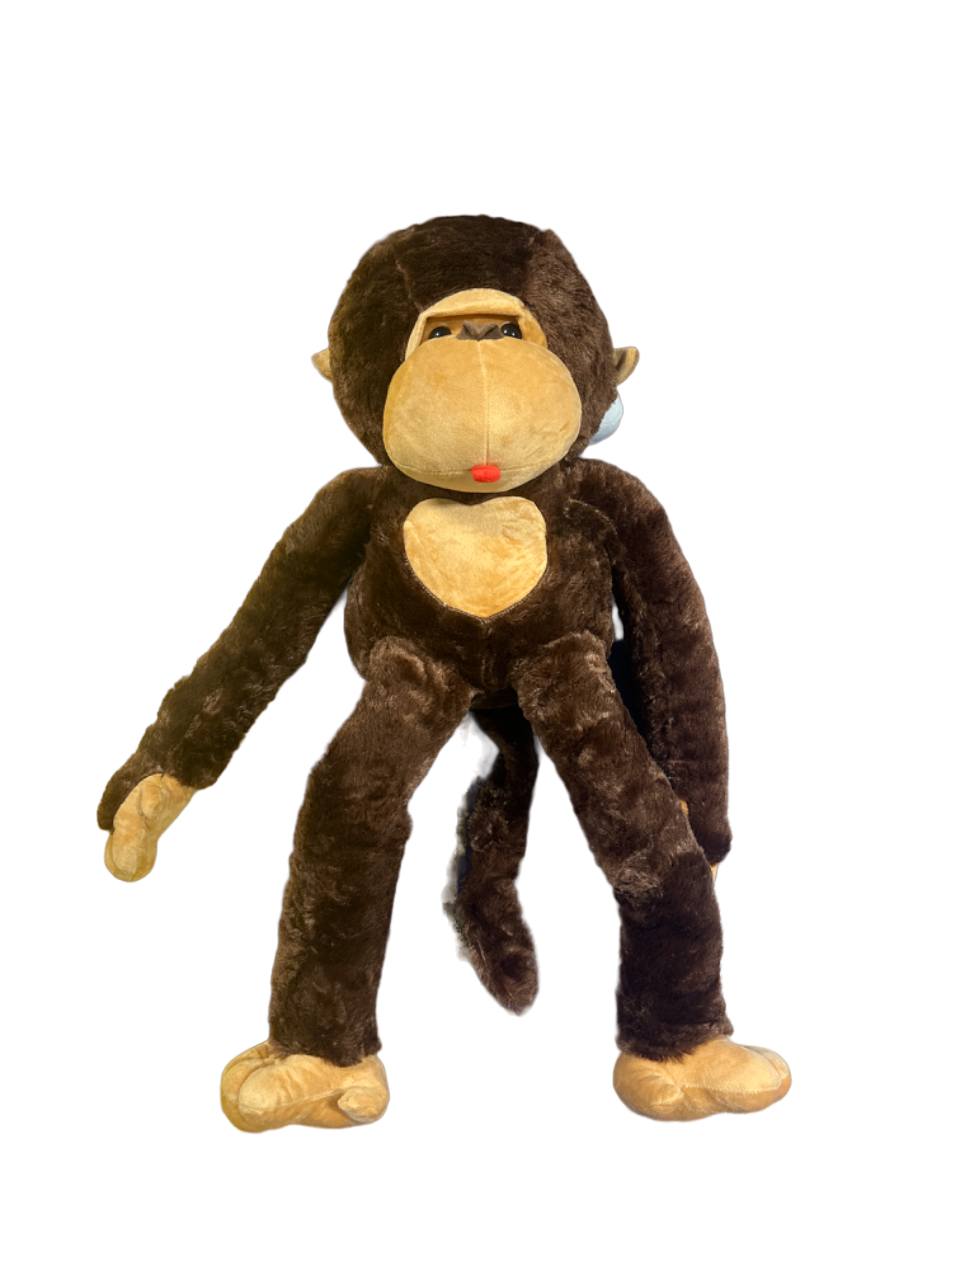 30" Brown Plush Monkey 1 Piece